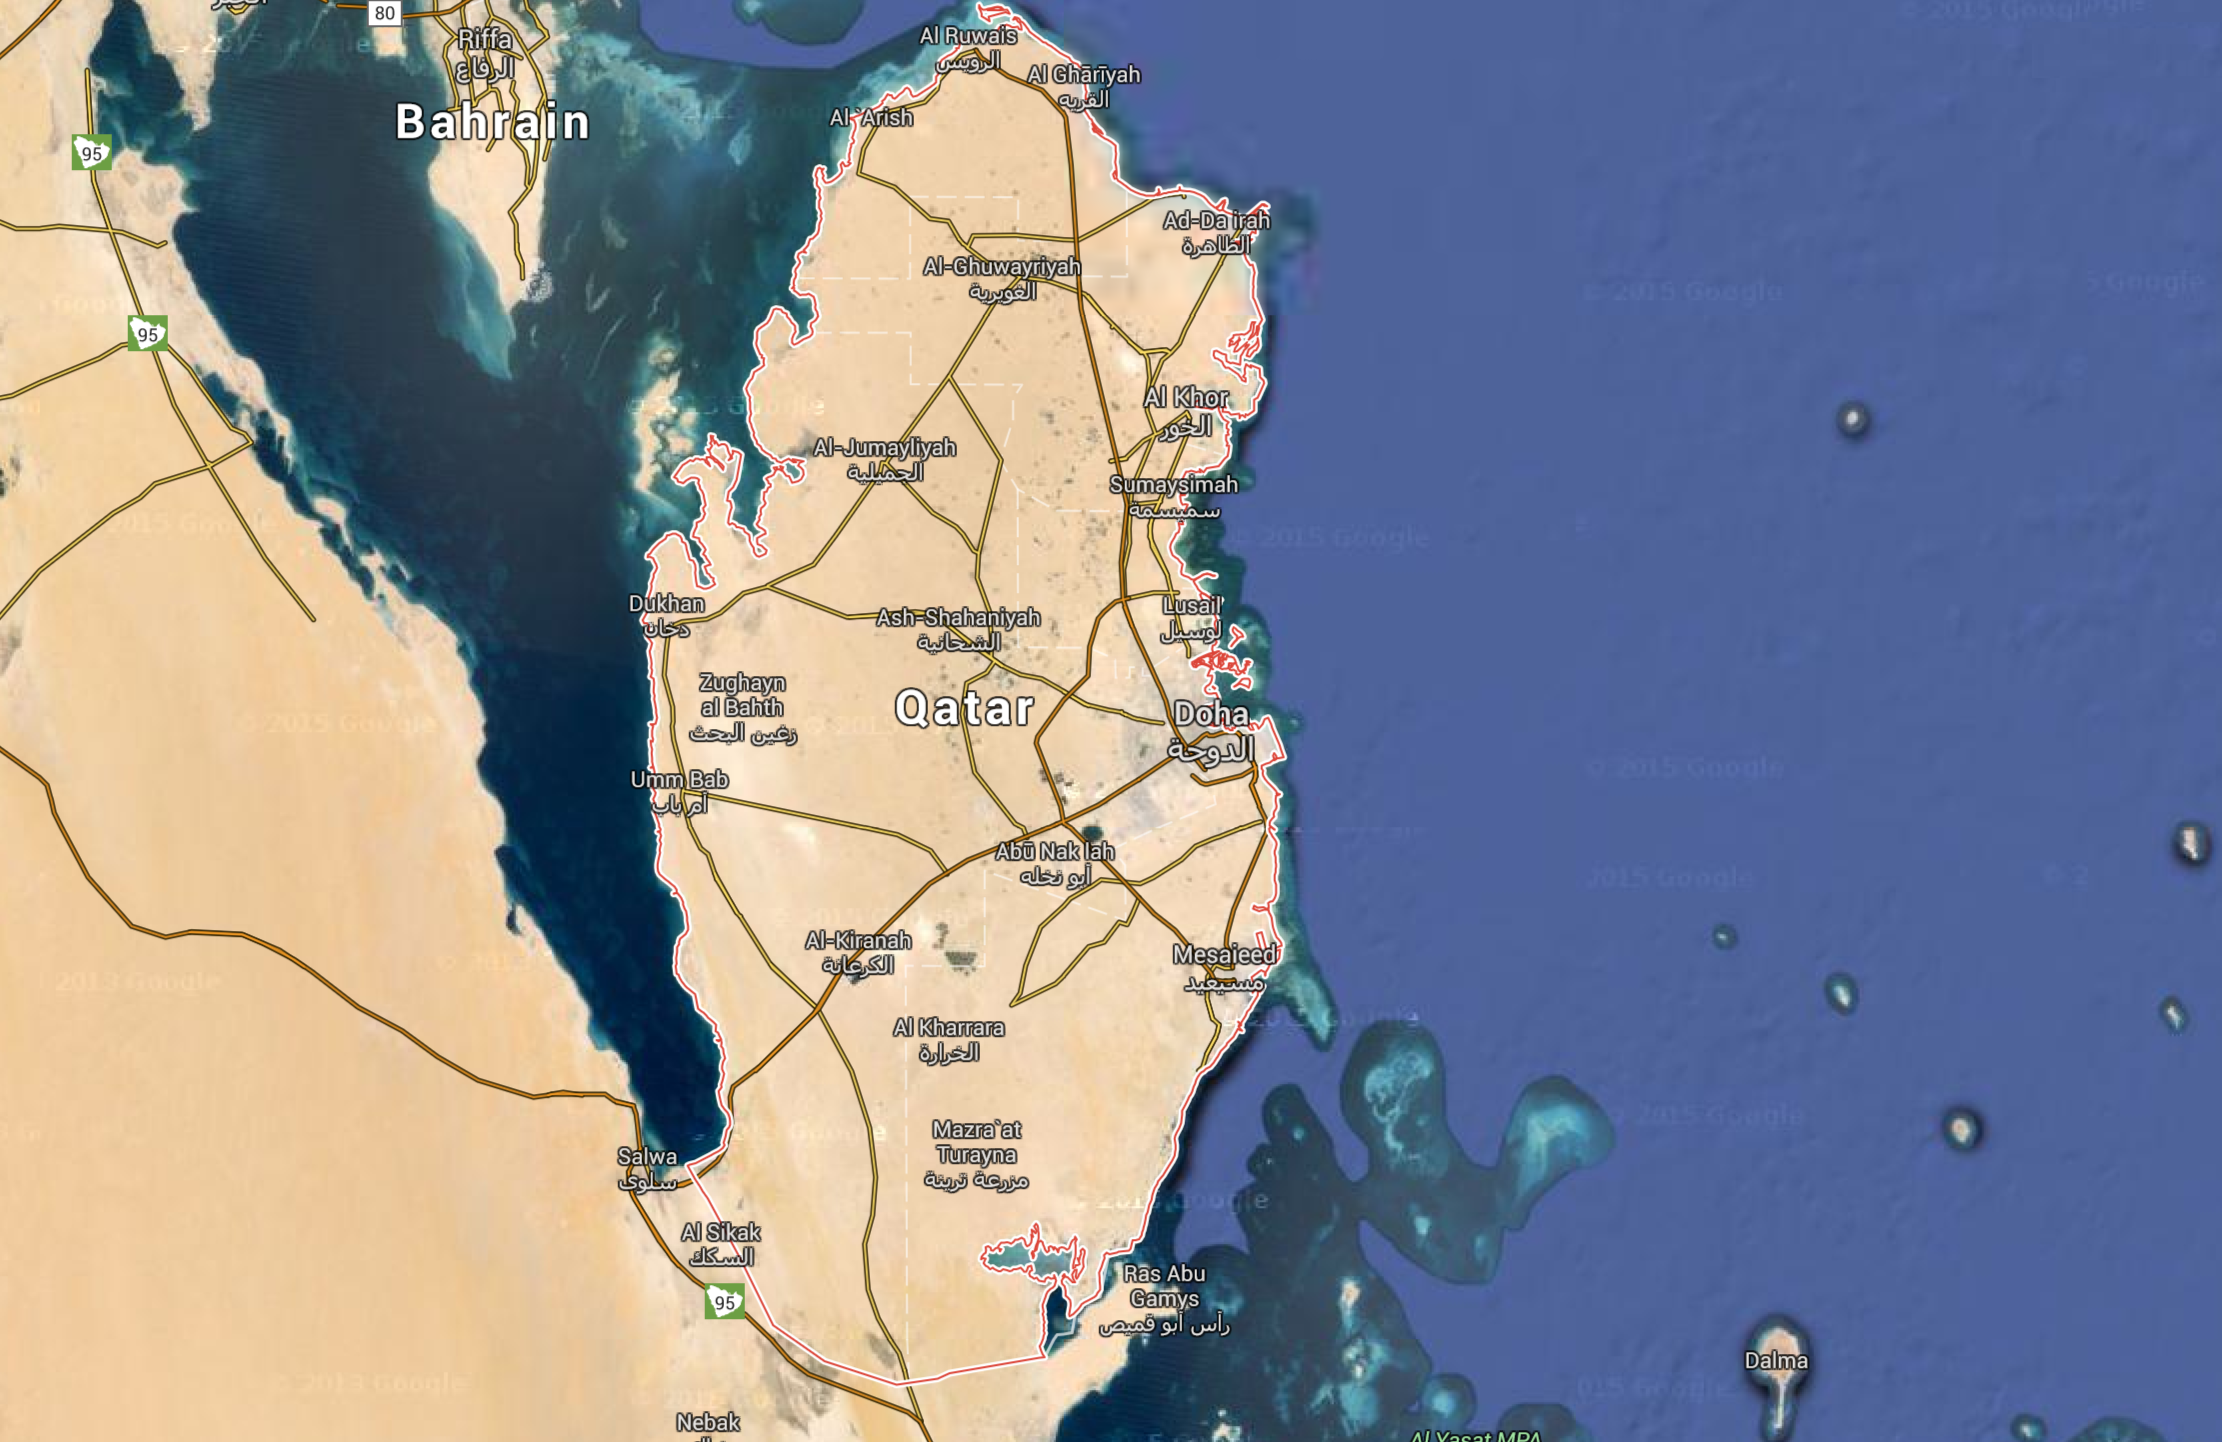 Qatar map